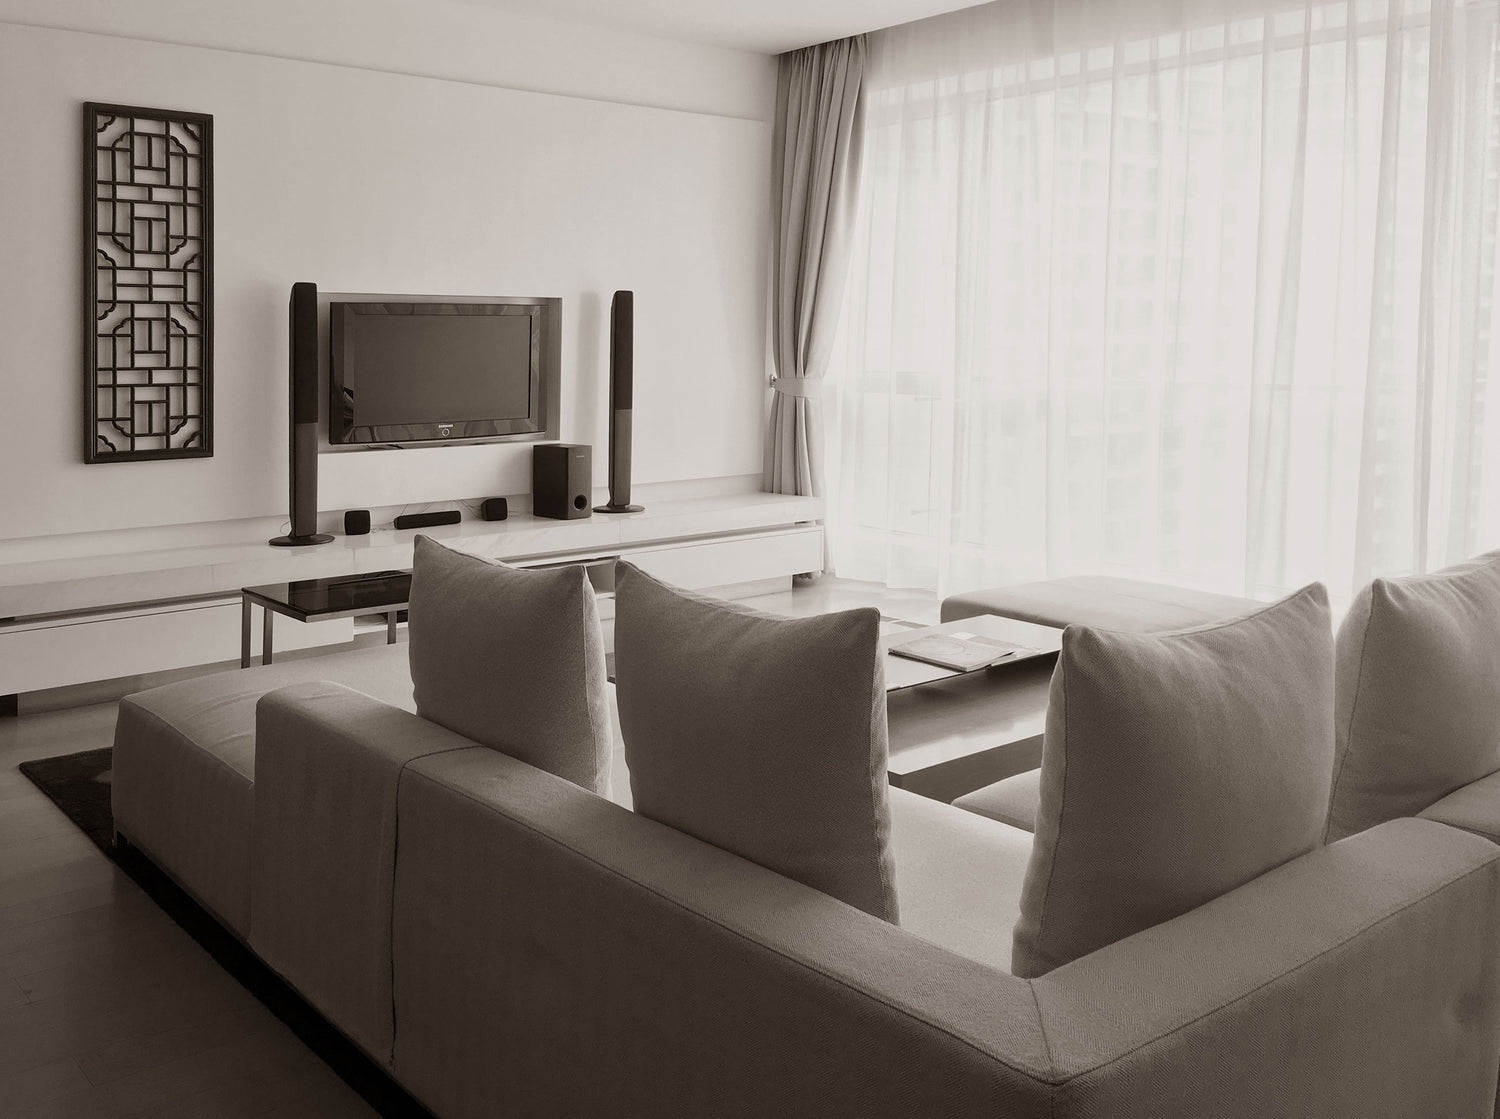 Sala de estar, com uma televisão e um sofá, no apartamento de Xangai antes de ser renovado.